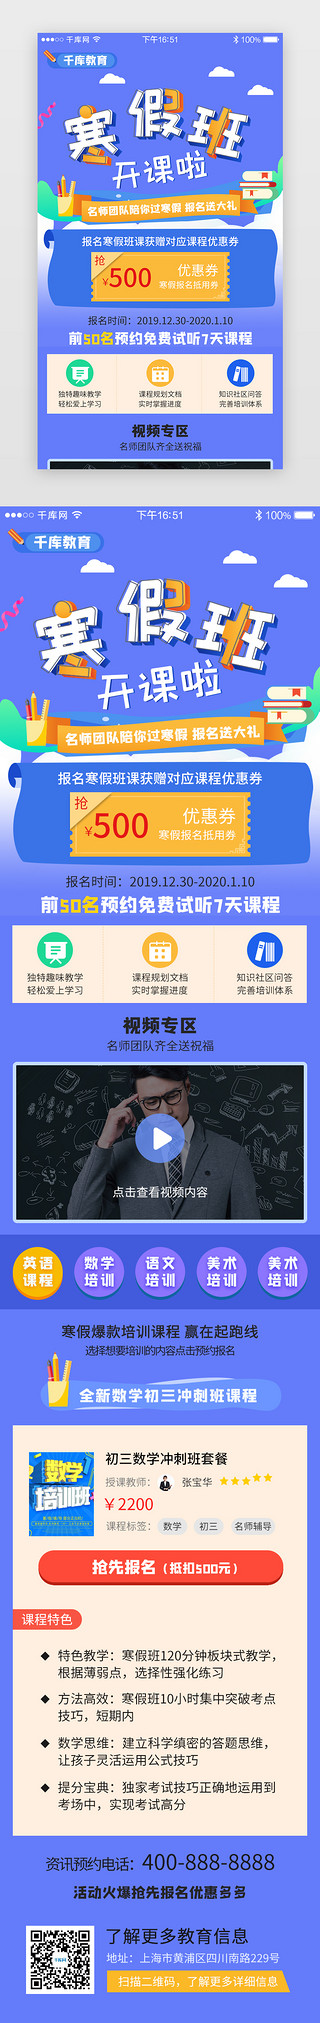 寒假体验UI设计素材_蓝色系app寒假培训教育H5